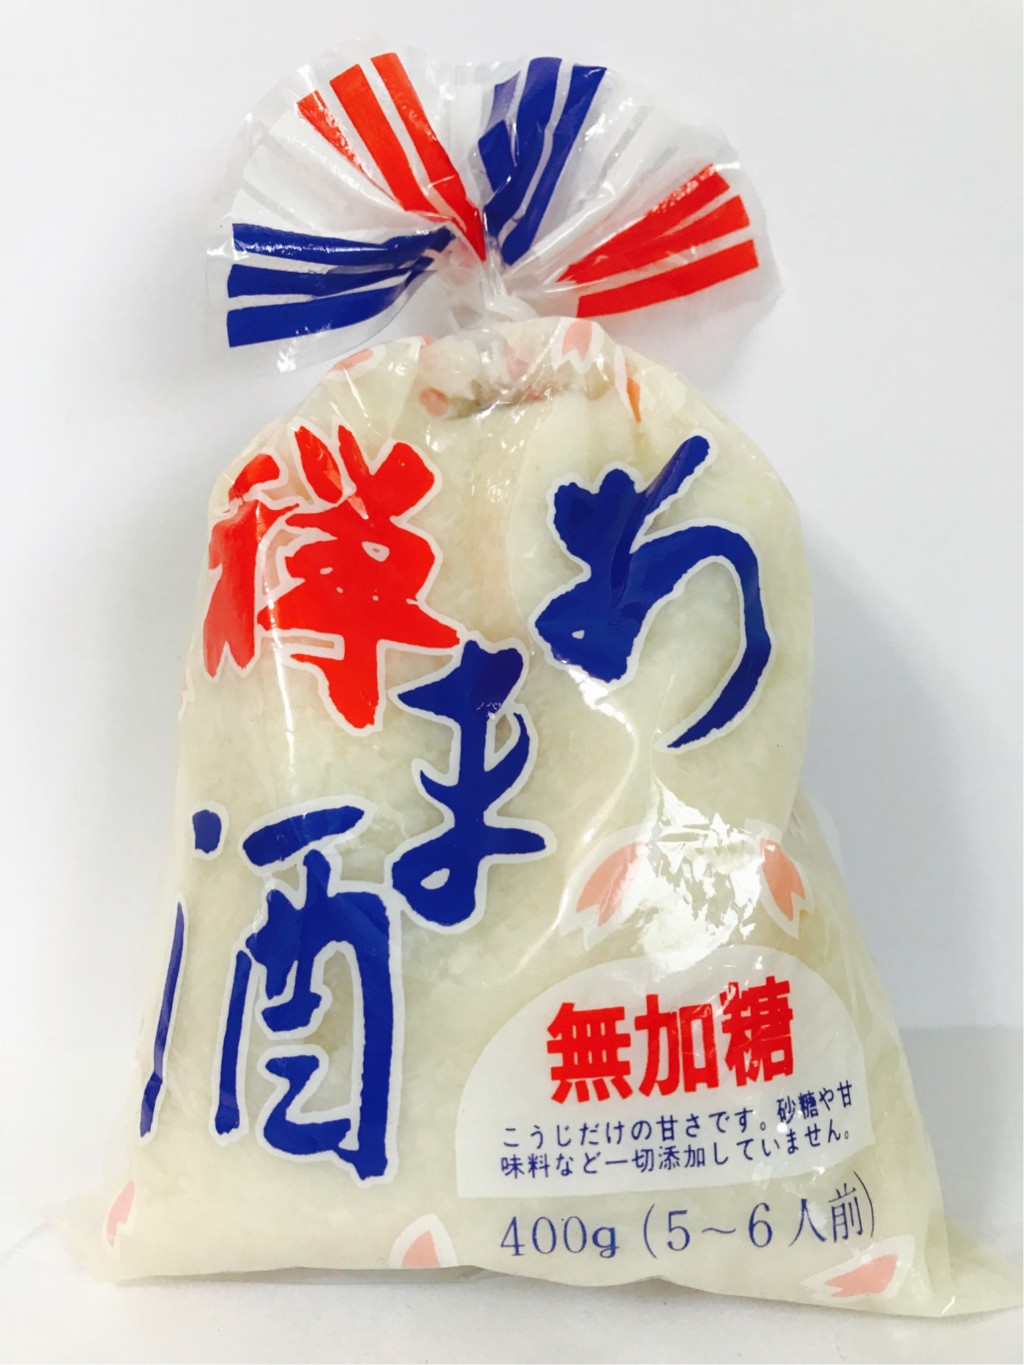 カネジュウ食品の濃縮タイプの米麹甘酒『禅あま酒』